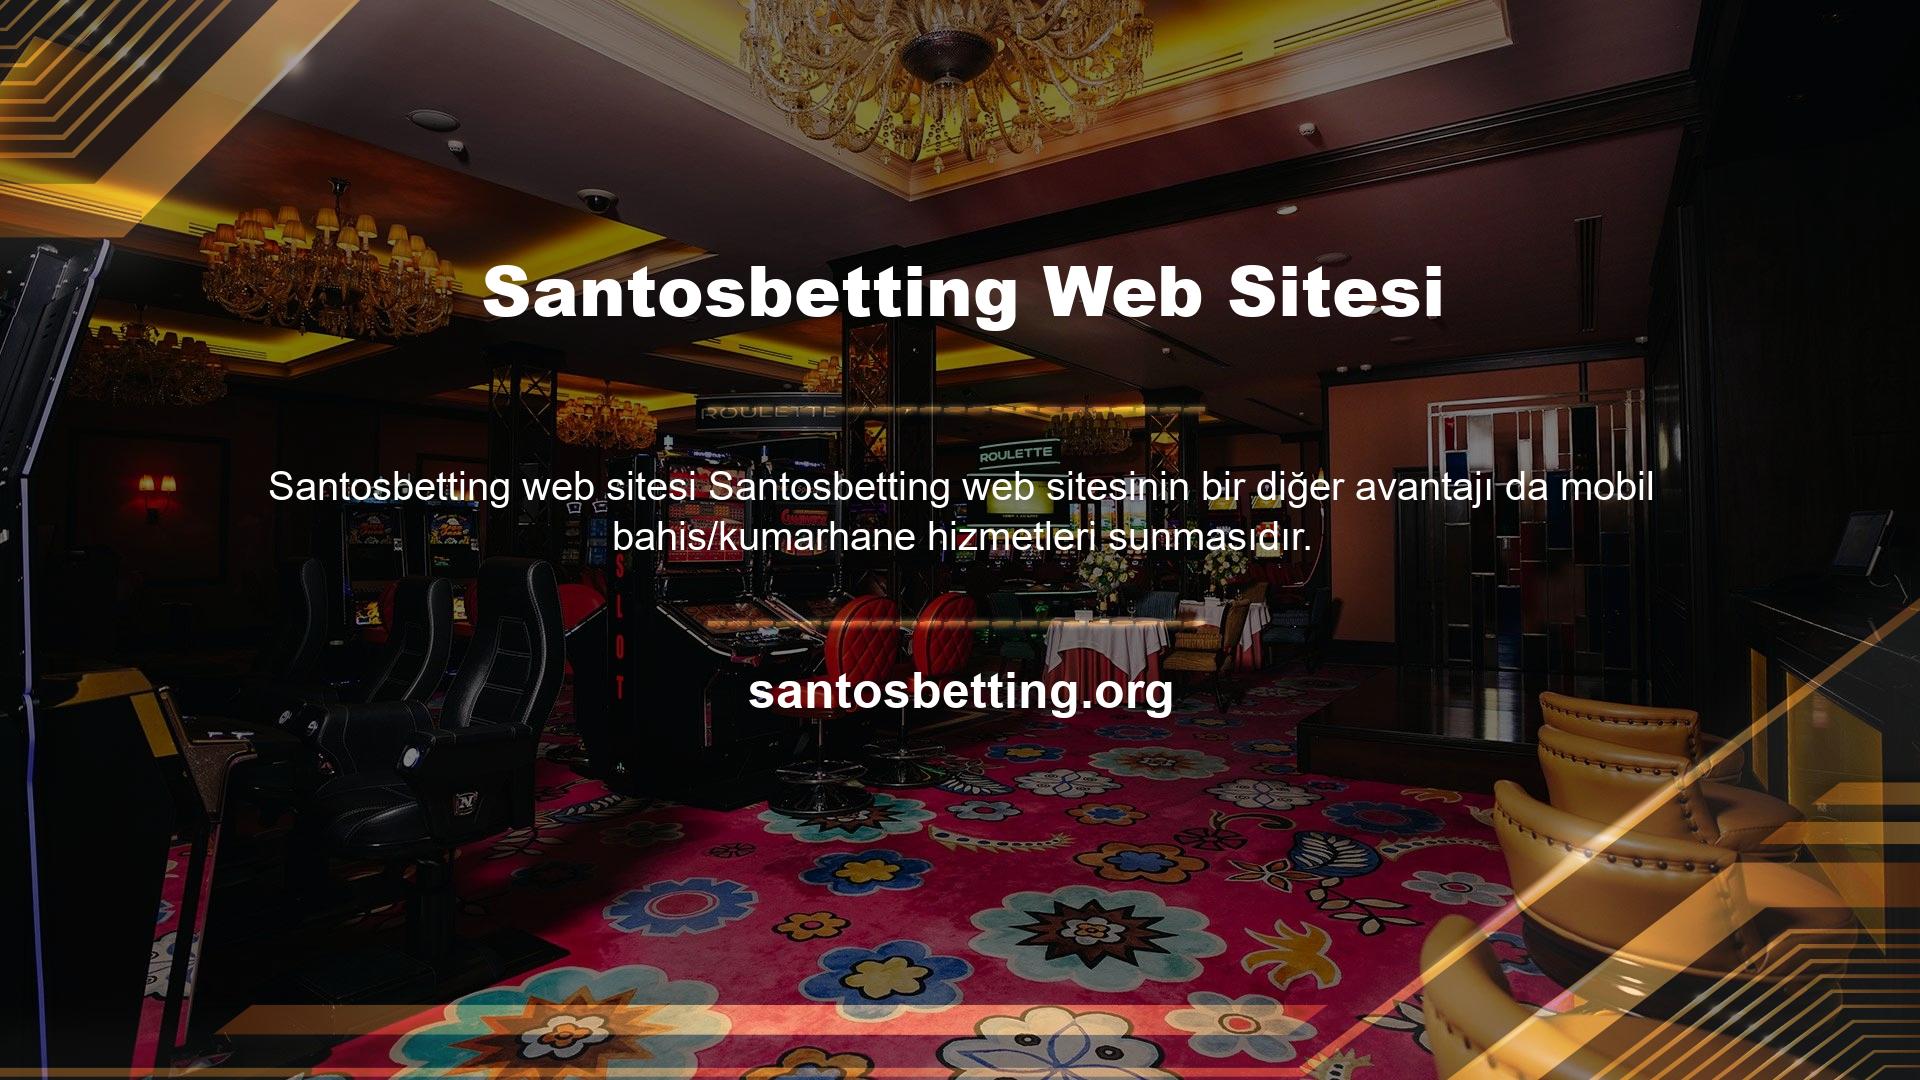 Cebinizden Santosbetting Mobile'a bağlanın ve en iyi mobil oyunların keyfini çıkarın